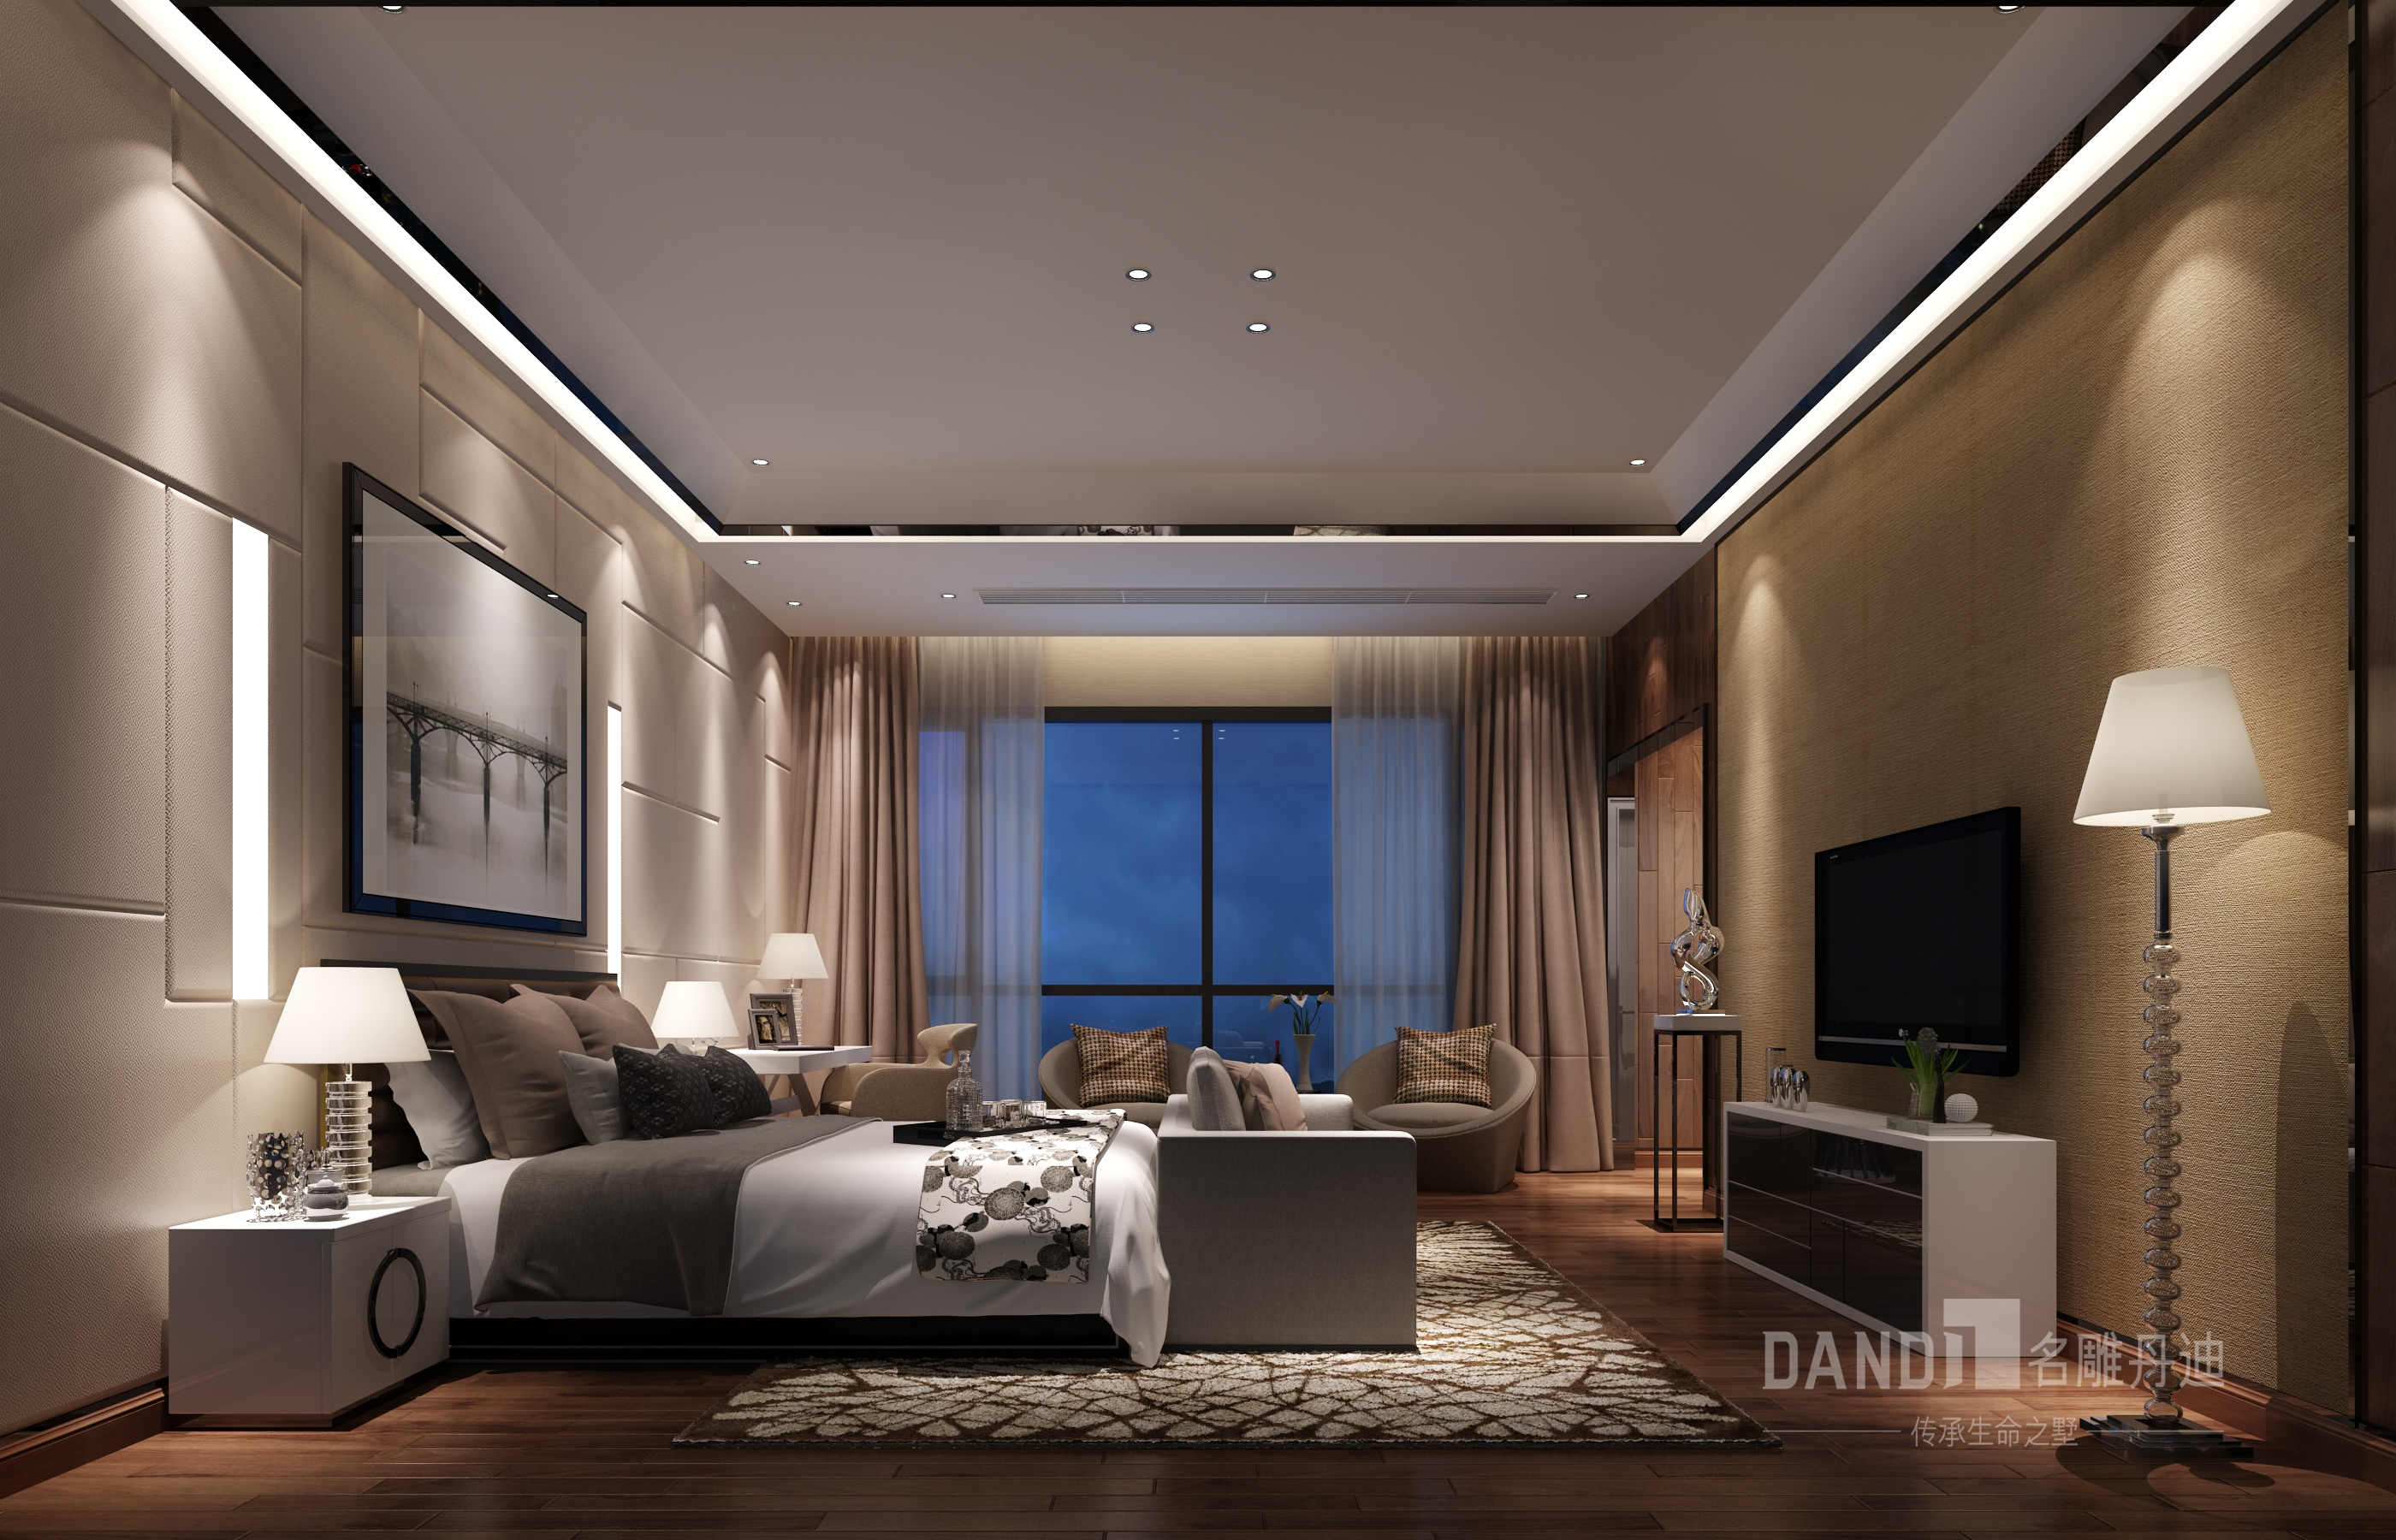 简约 别墅 三居 卧室图片来自名雕丹迪在香山美墅现代简约风格装修900平的分享